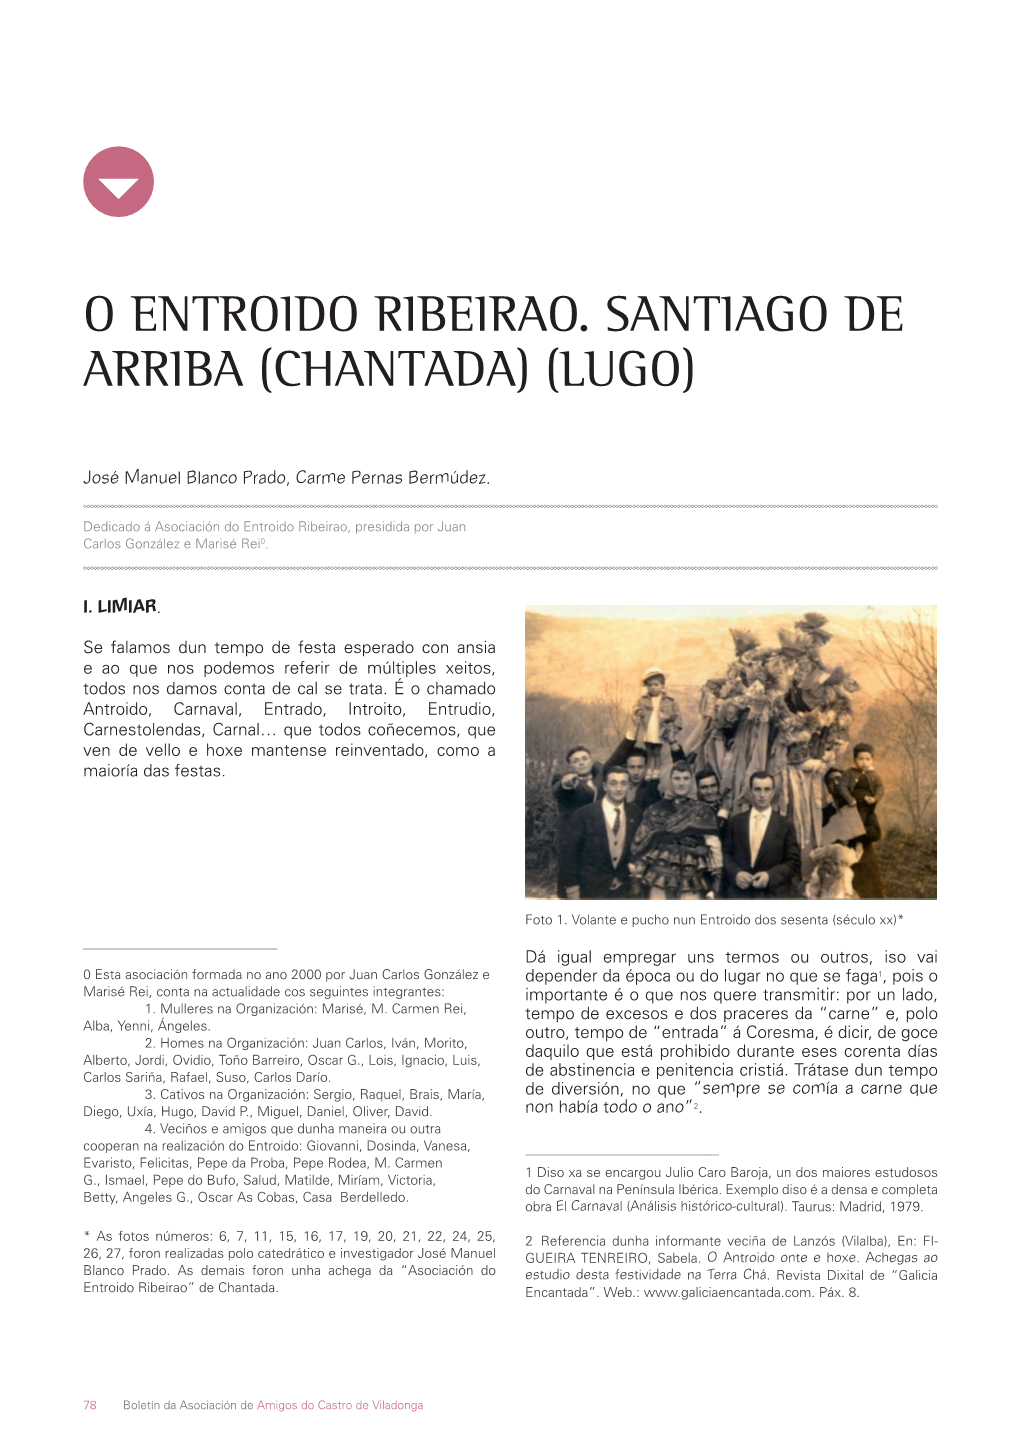 O Entroido Ribeirao. Santiago De Arriba (Chantada) (Lugo)